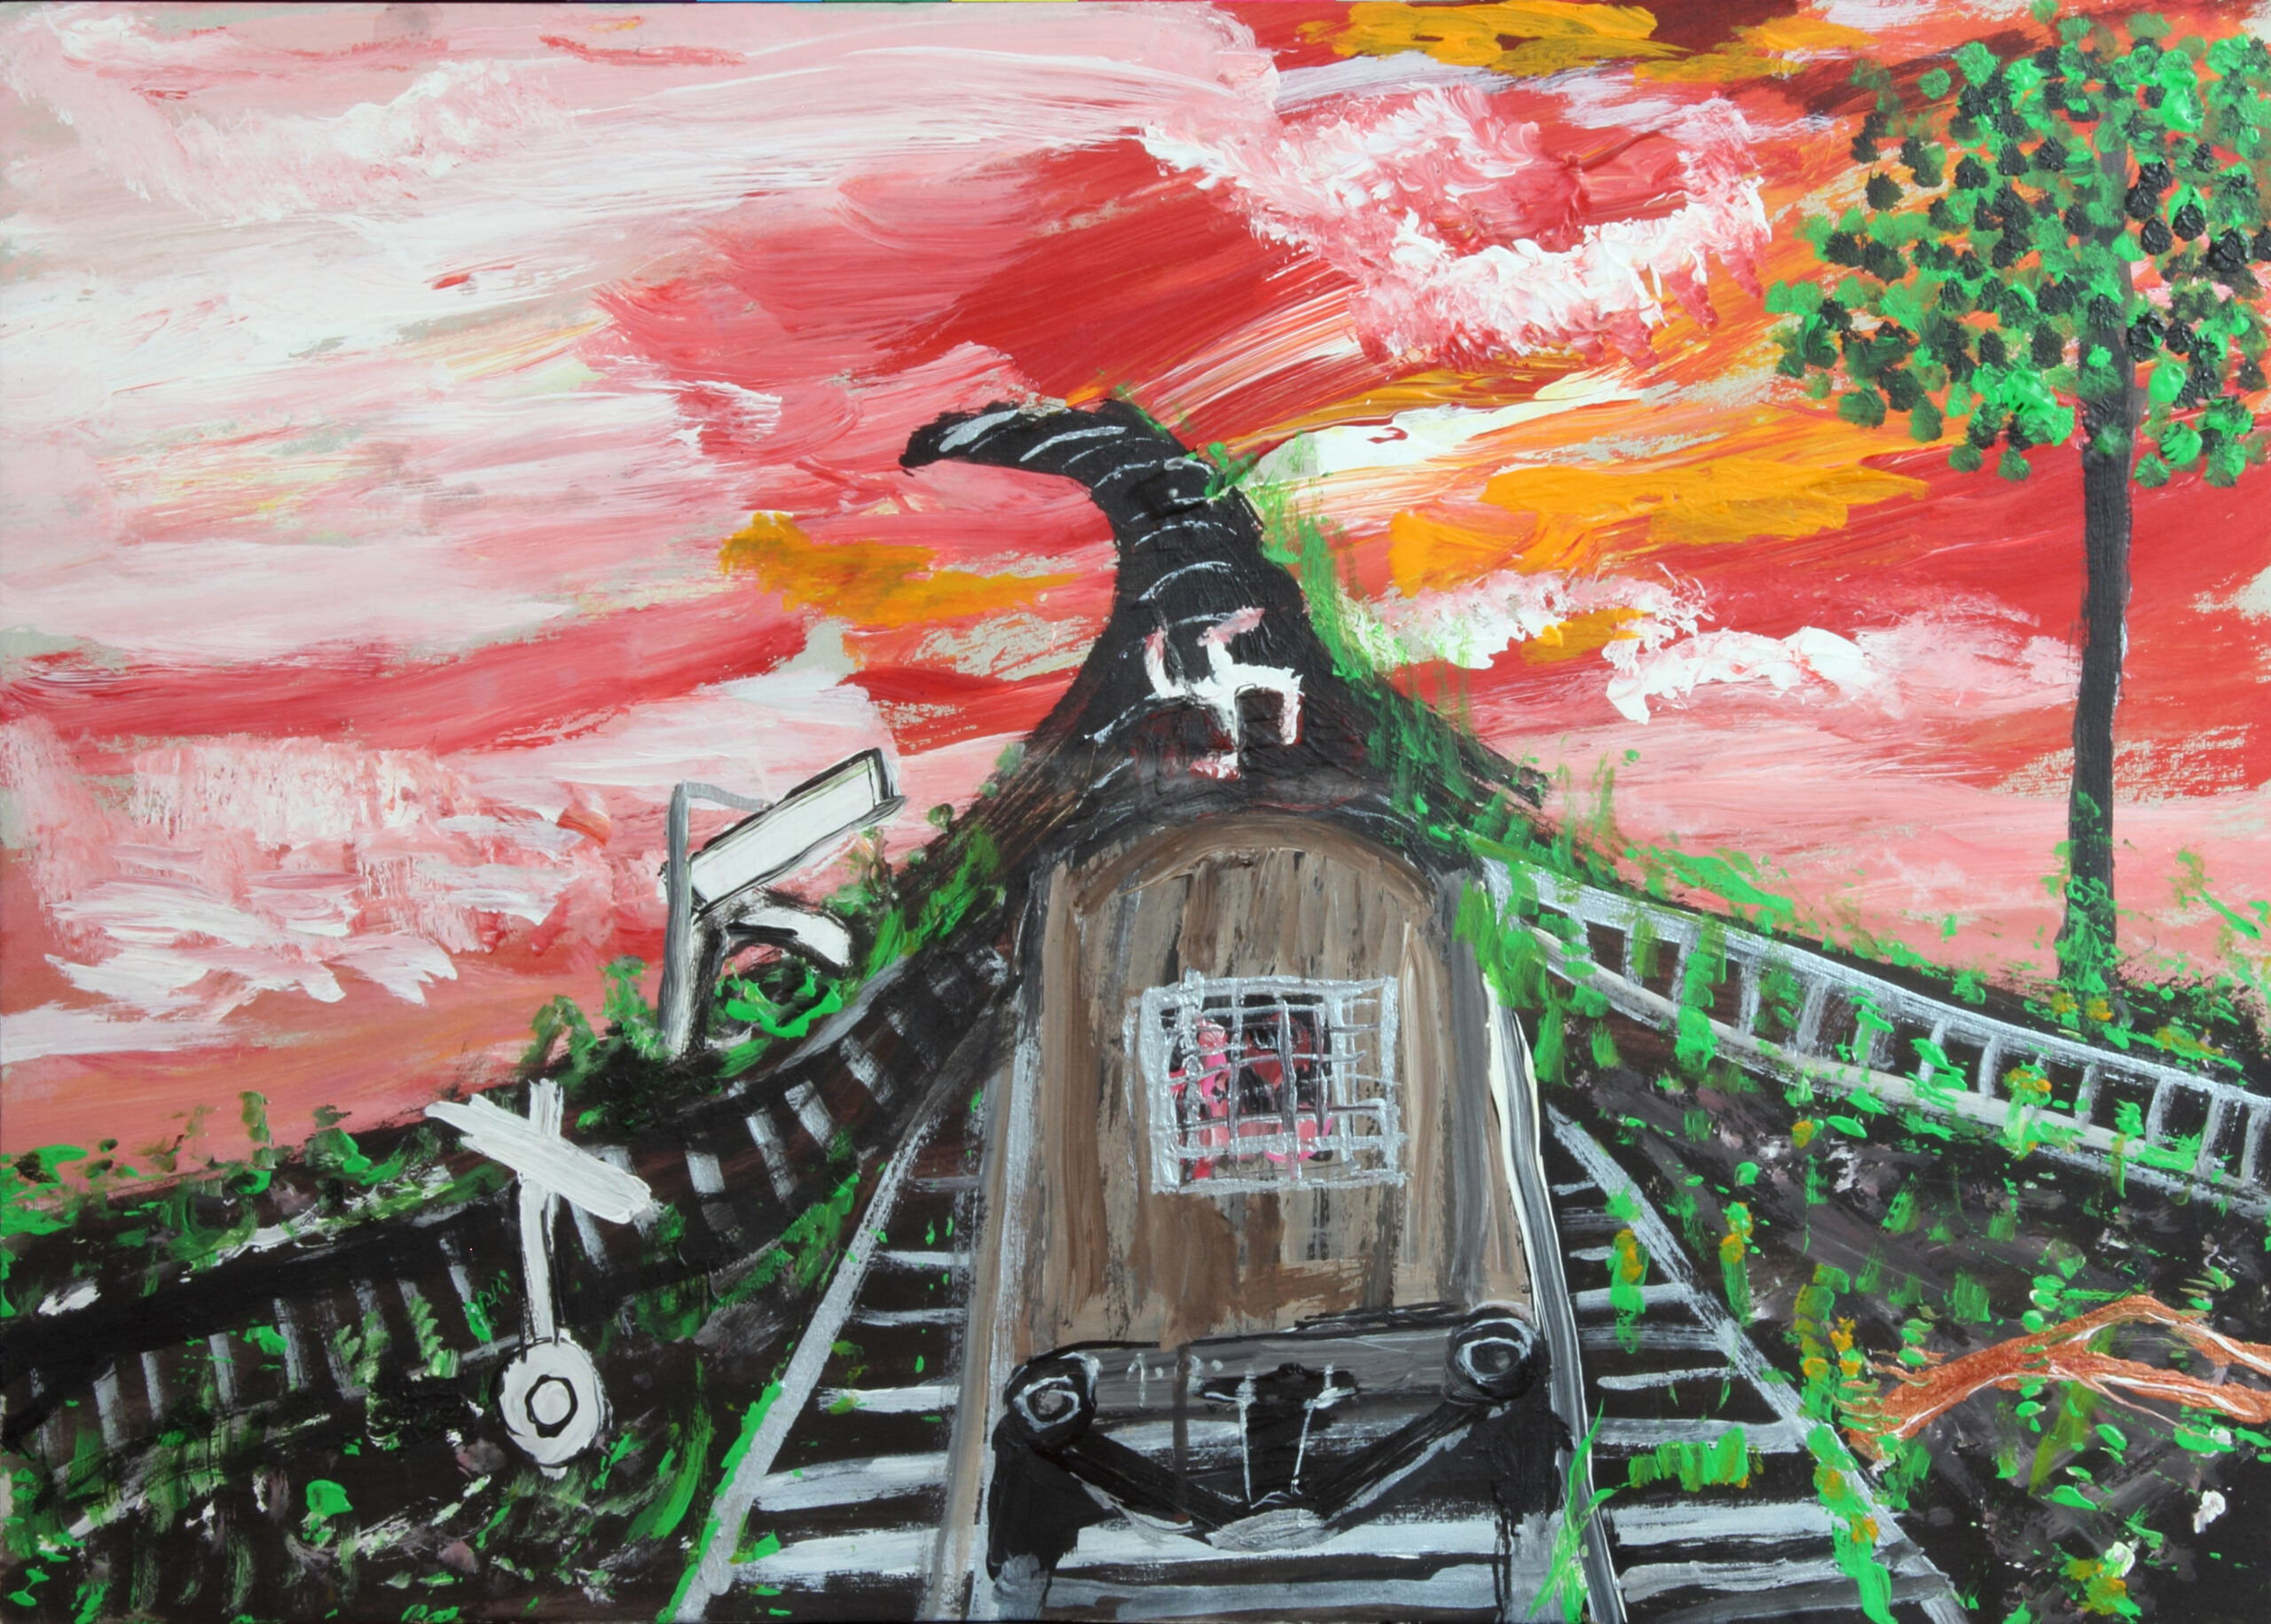 Naivistisk målning av ett svart tåg med gallerfönster på väg mot ett hakkors och en himmel i rött och gult.